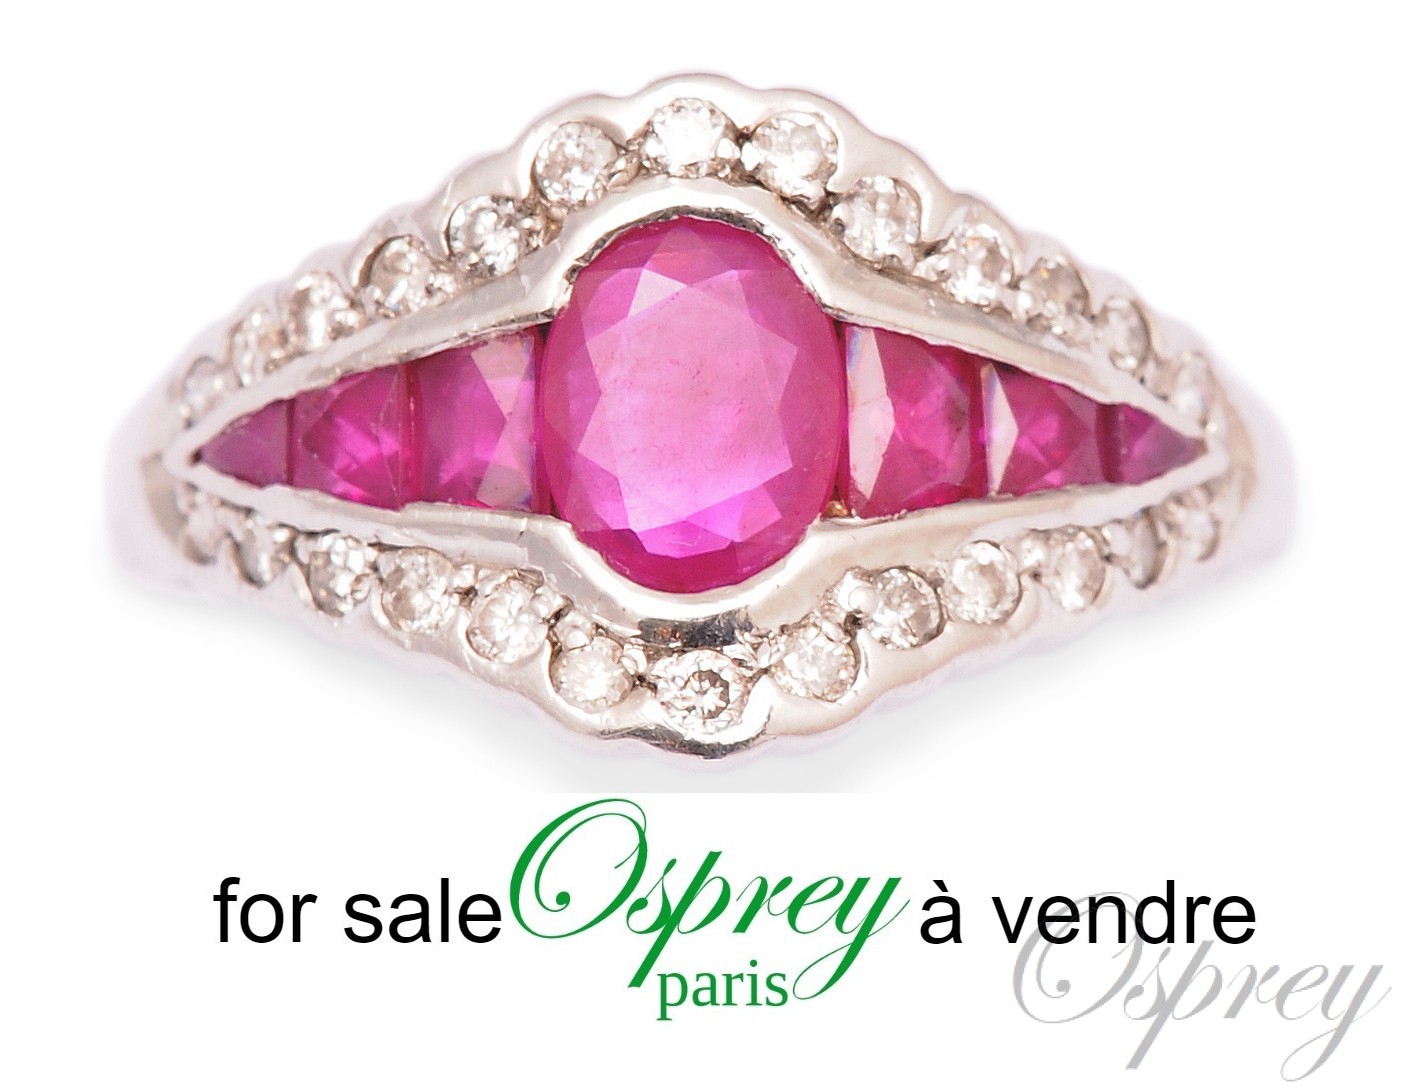 bague or blanc diamants et rubis osprey Paris